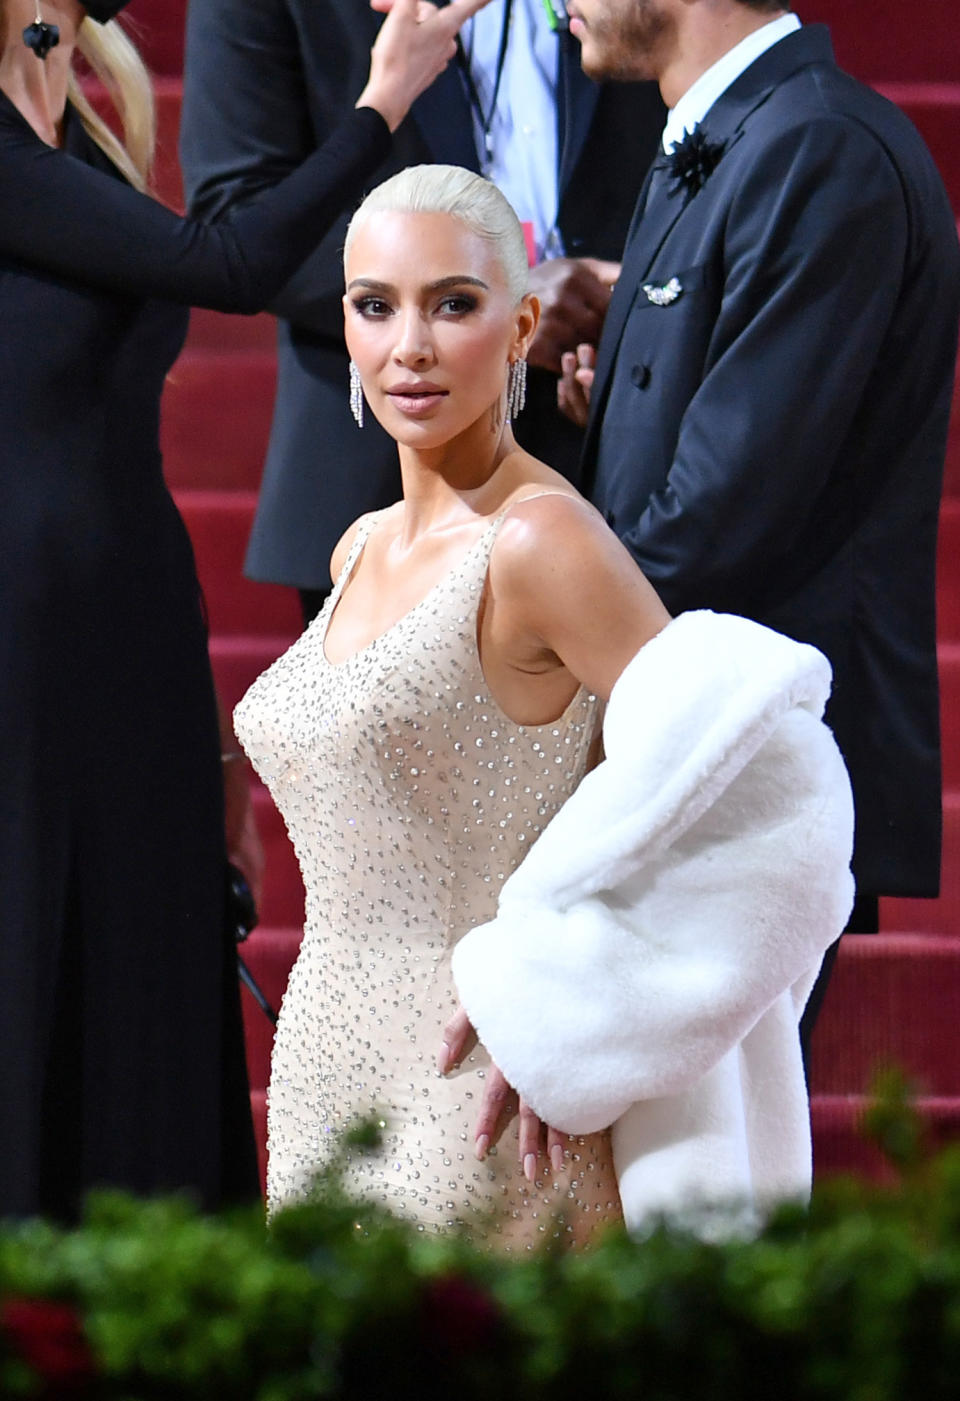 Kim Kardashian wearing Marilyn Monroe's dress at the 2022 Met Gala